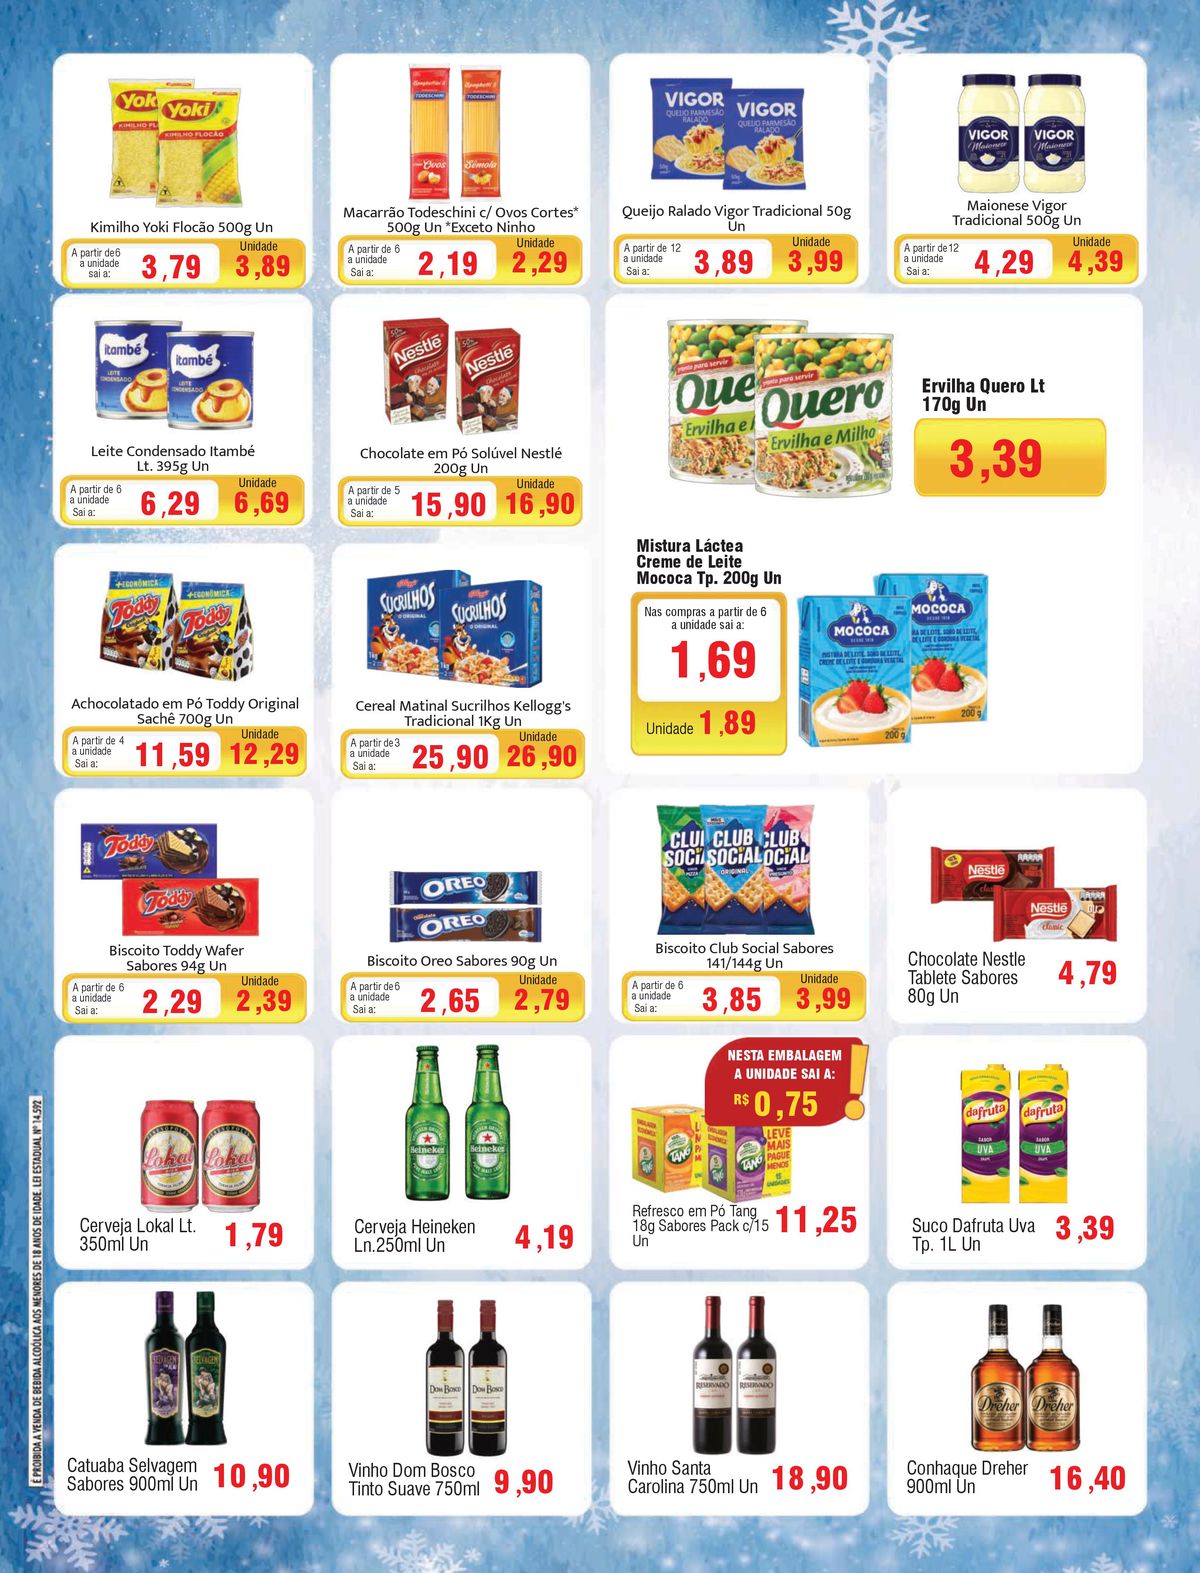 Ofertas em Supermercados: Macarrão Todeschini, Leite Condensado Itambé, Cerveja Heineken e mais